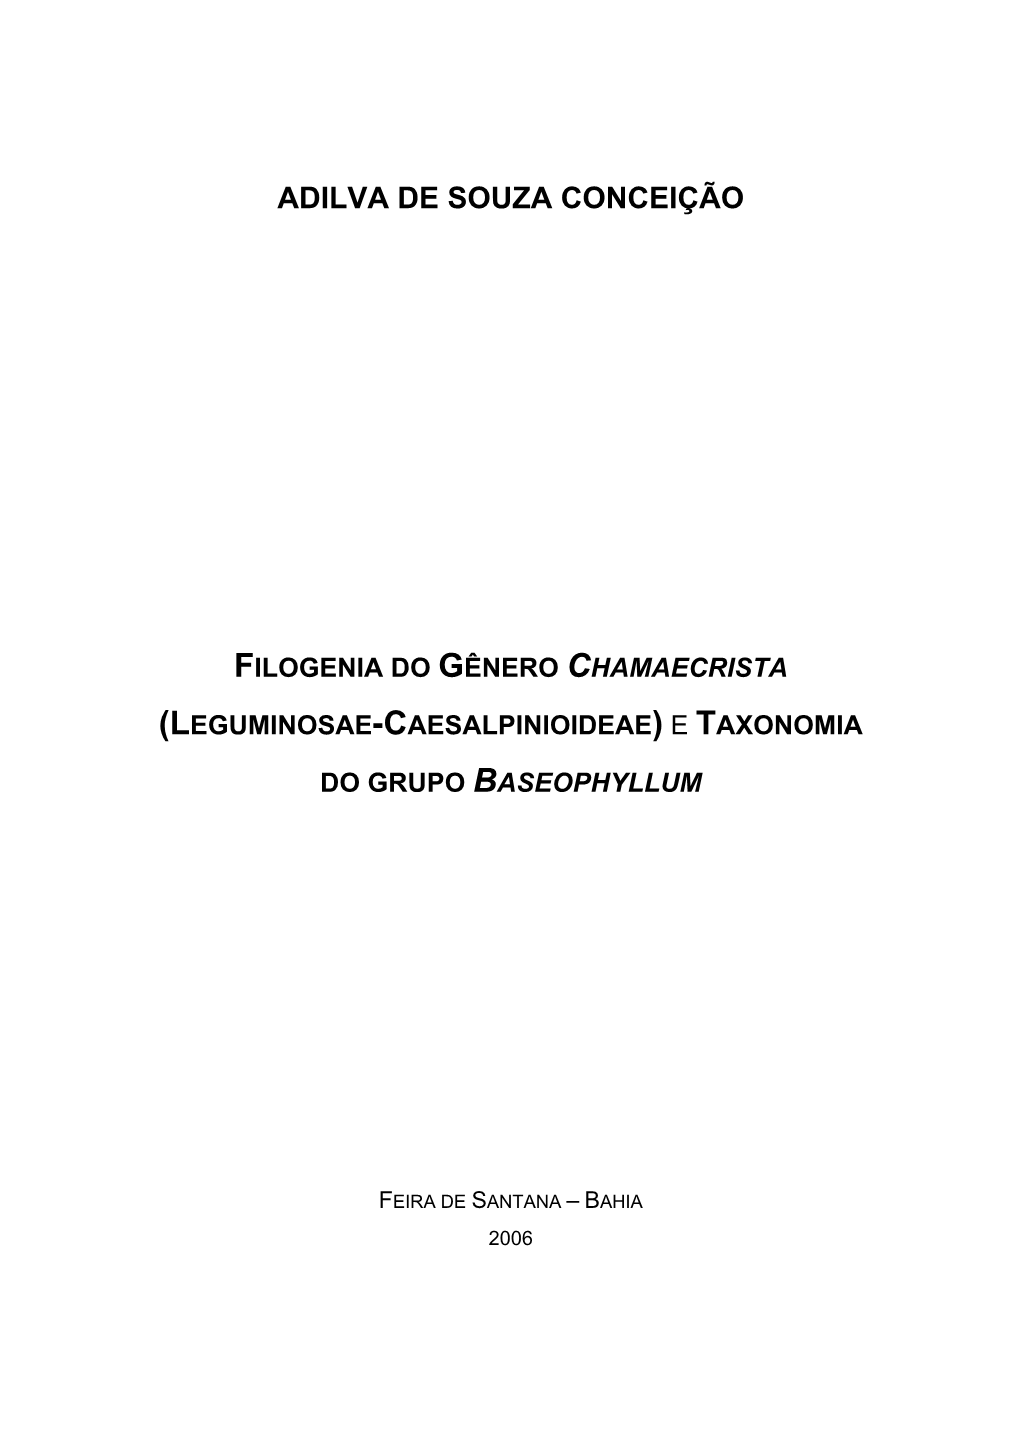 Leguminosae-Caesalpinioideae) E Taxonomia